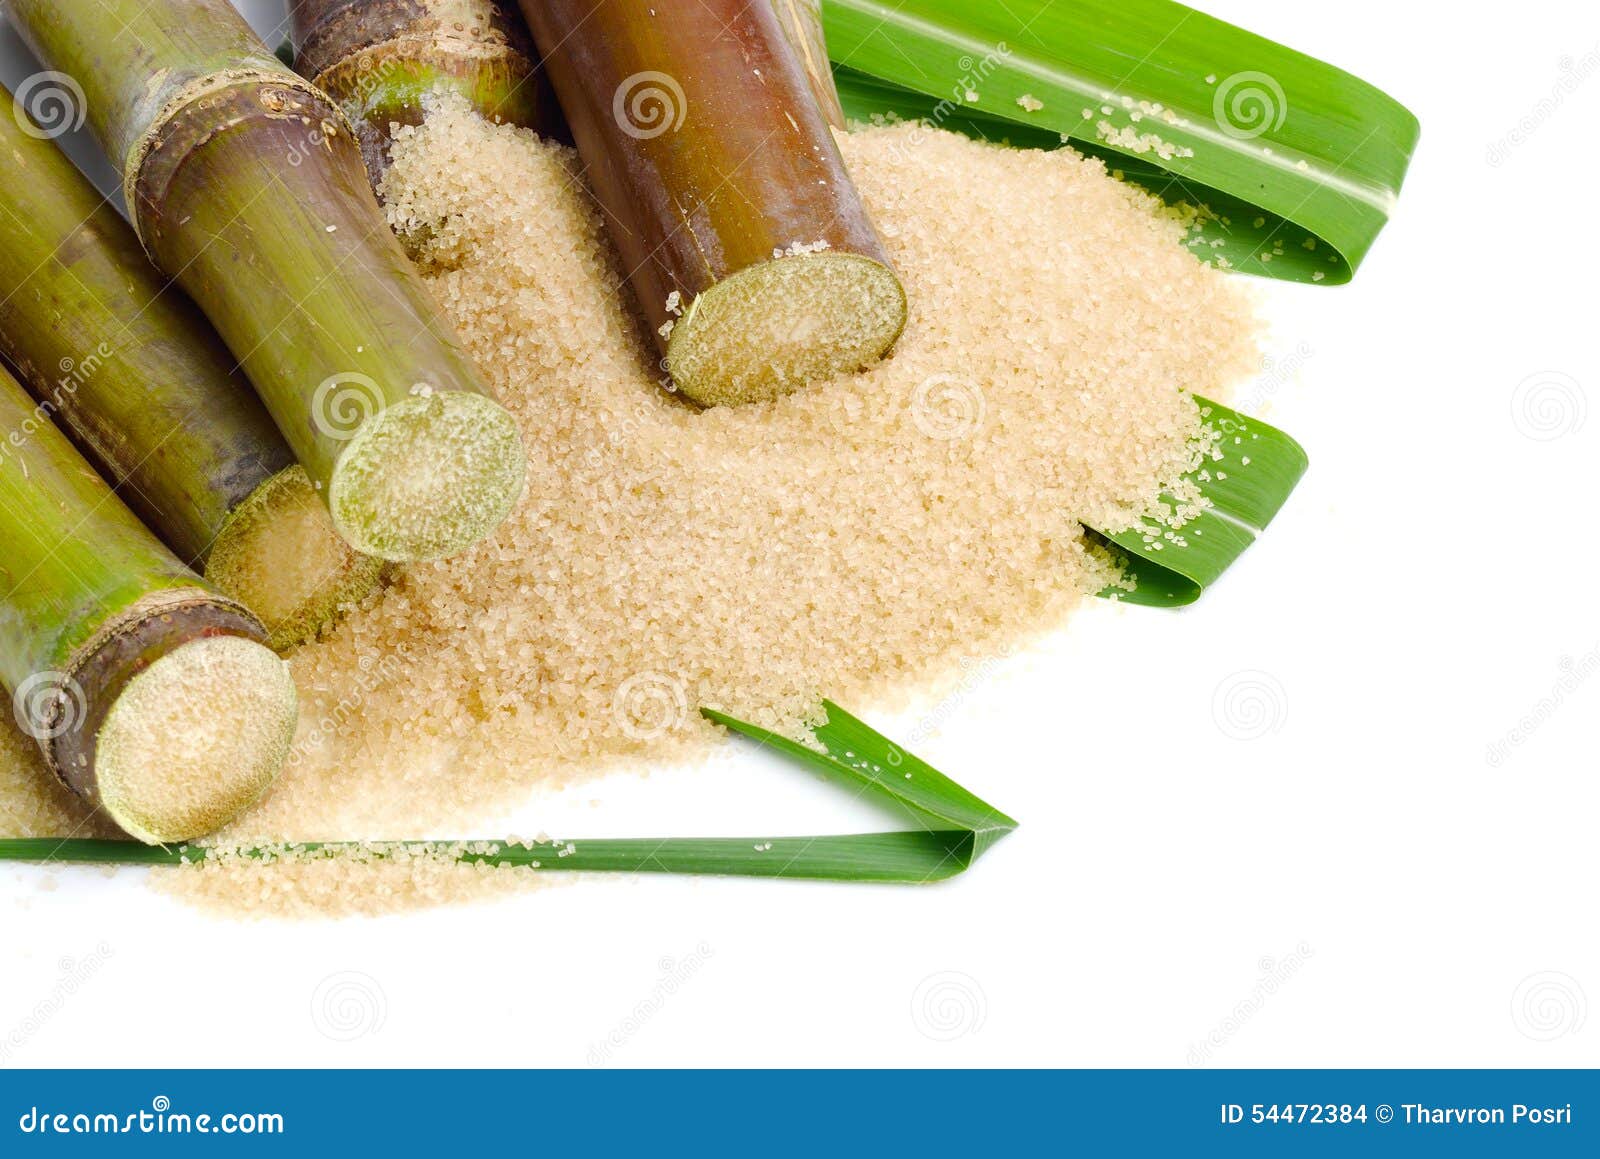 Г сахарный тростник. Сахарный тростник сахар. Сахар тростниковый. Сахар из тростника. Тростниковый сахар на белом фоне.